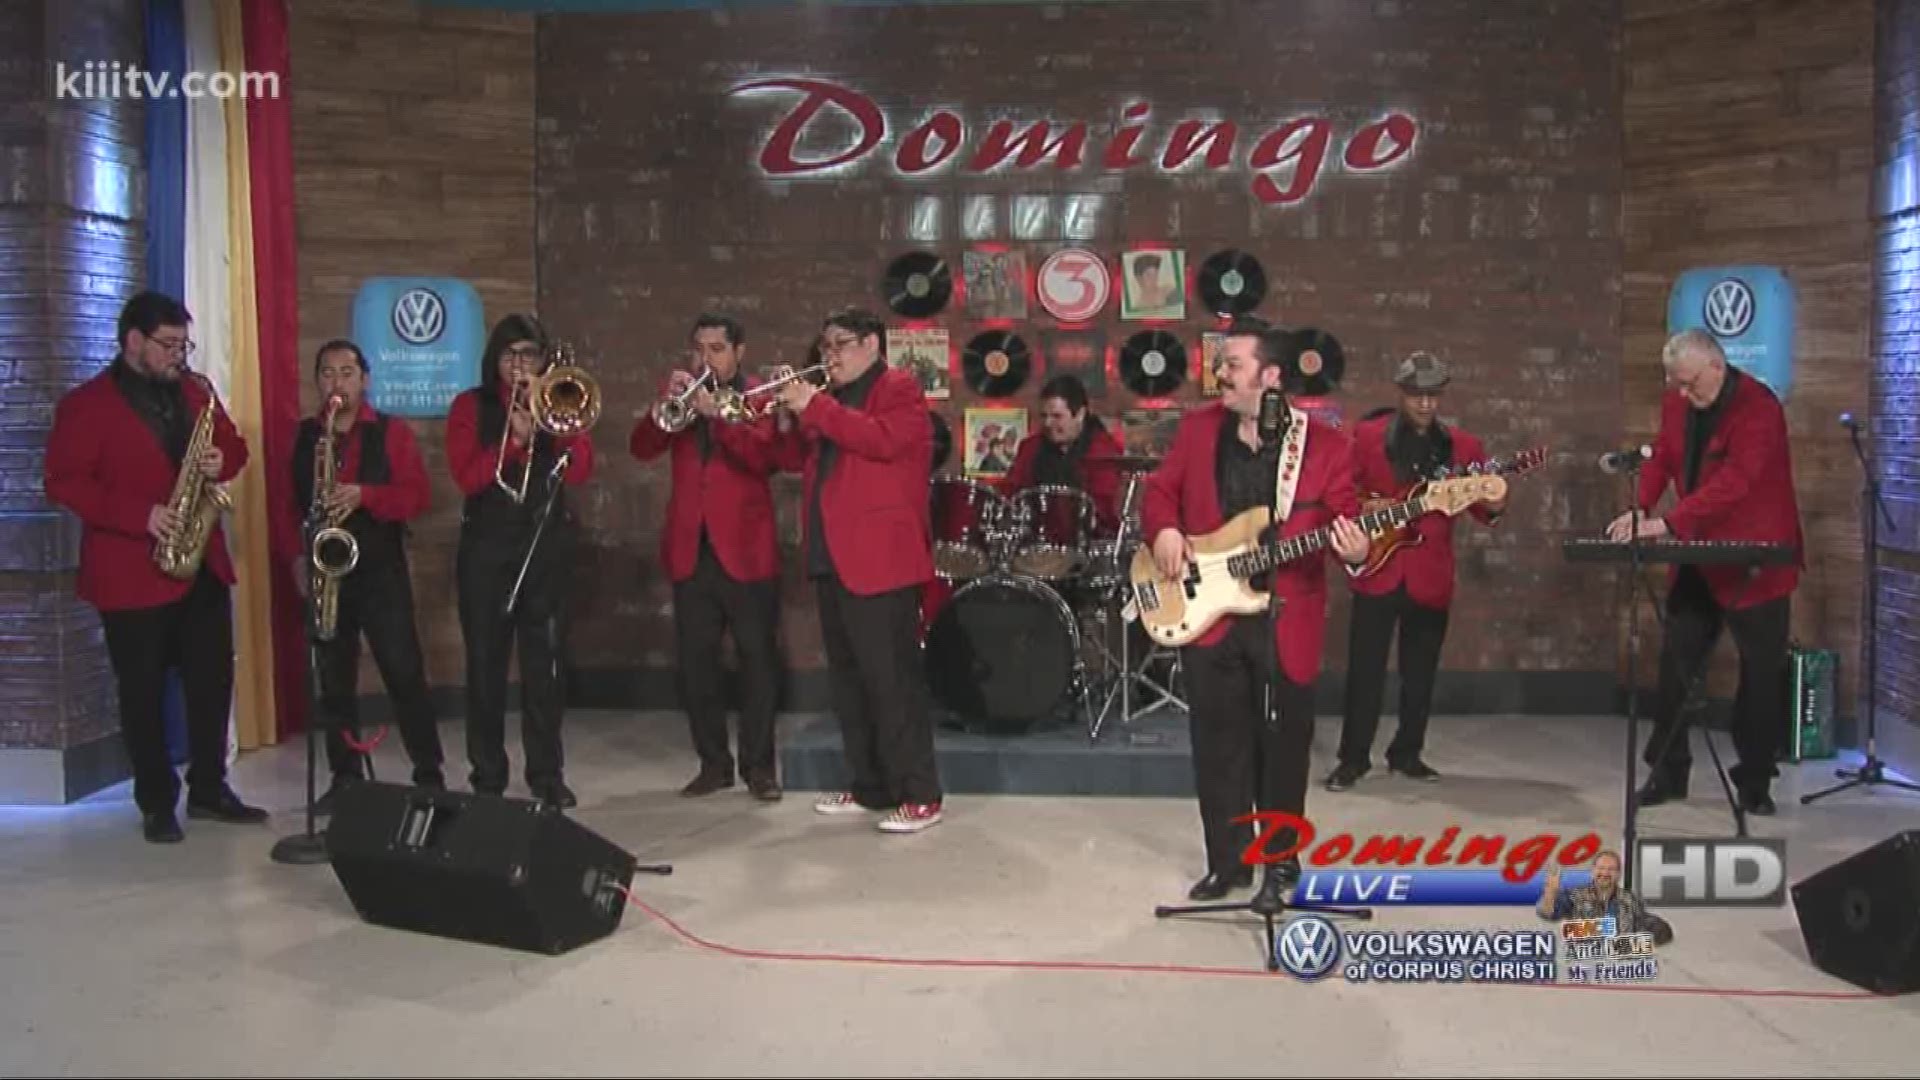 La 45 performing "Traigo Mi 45" on Domingo Live.